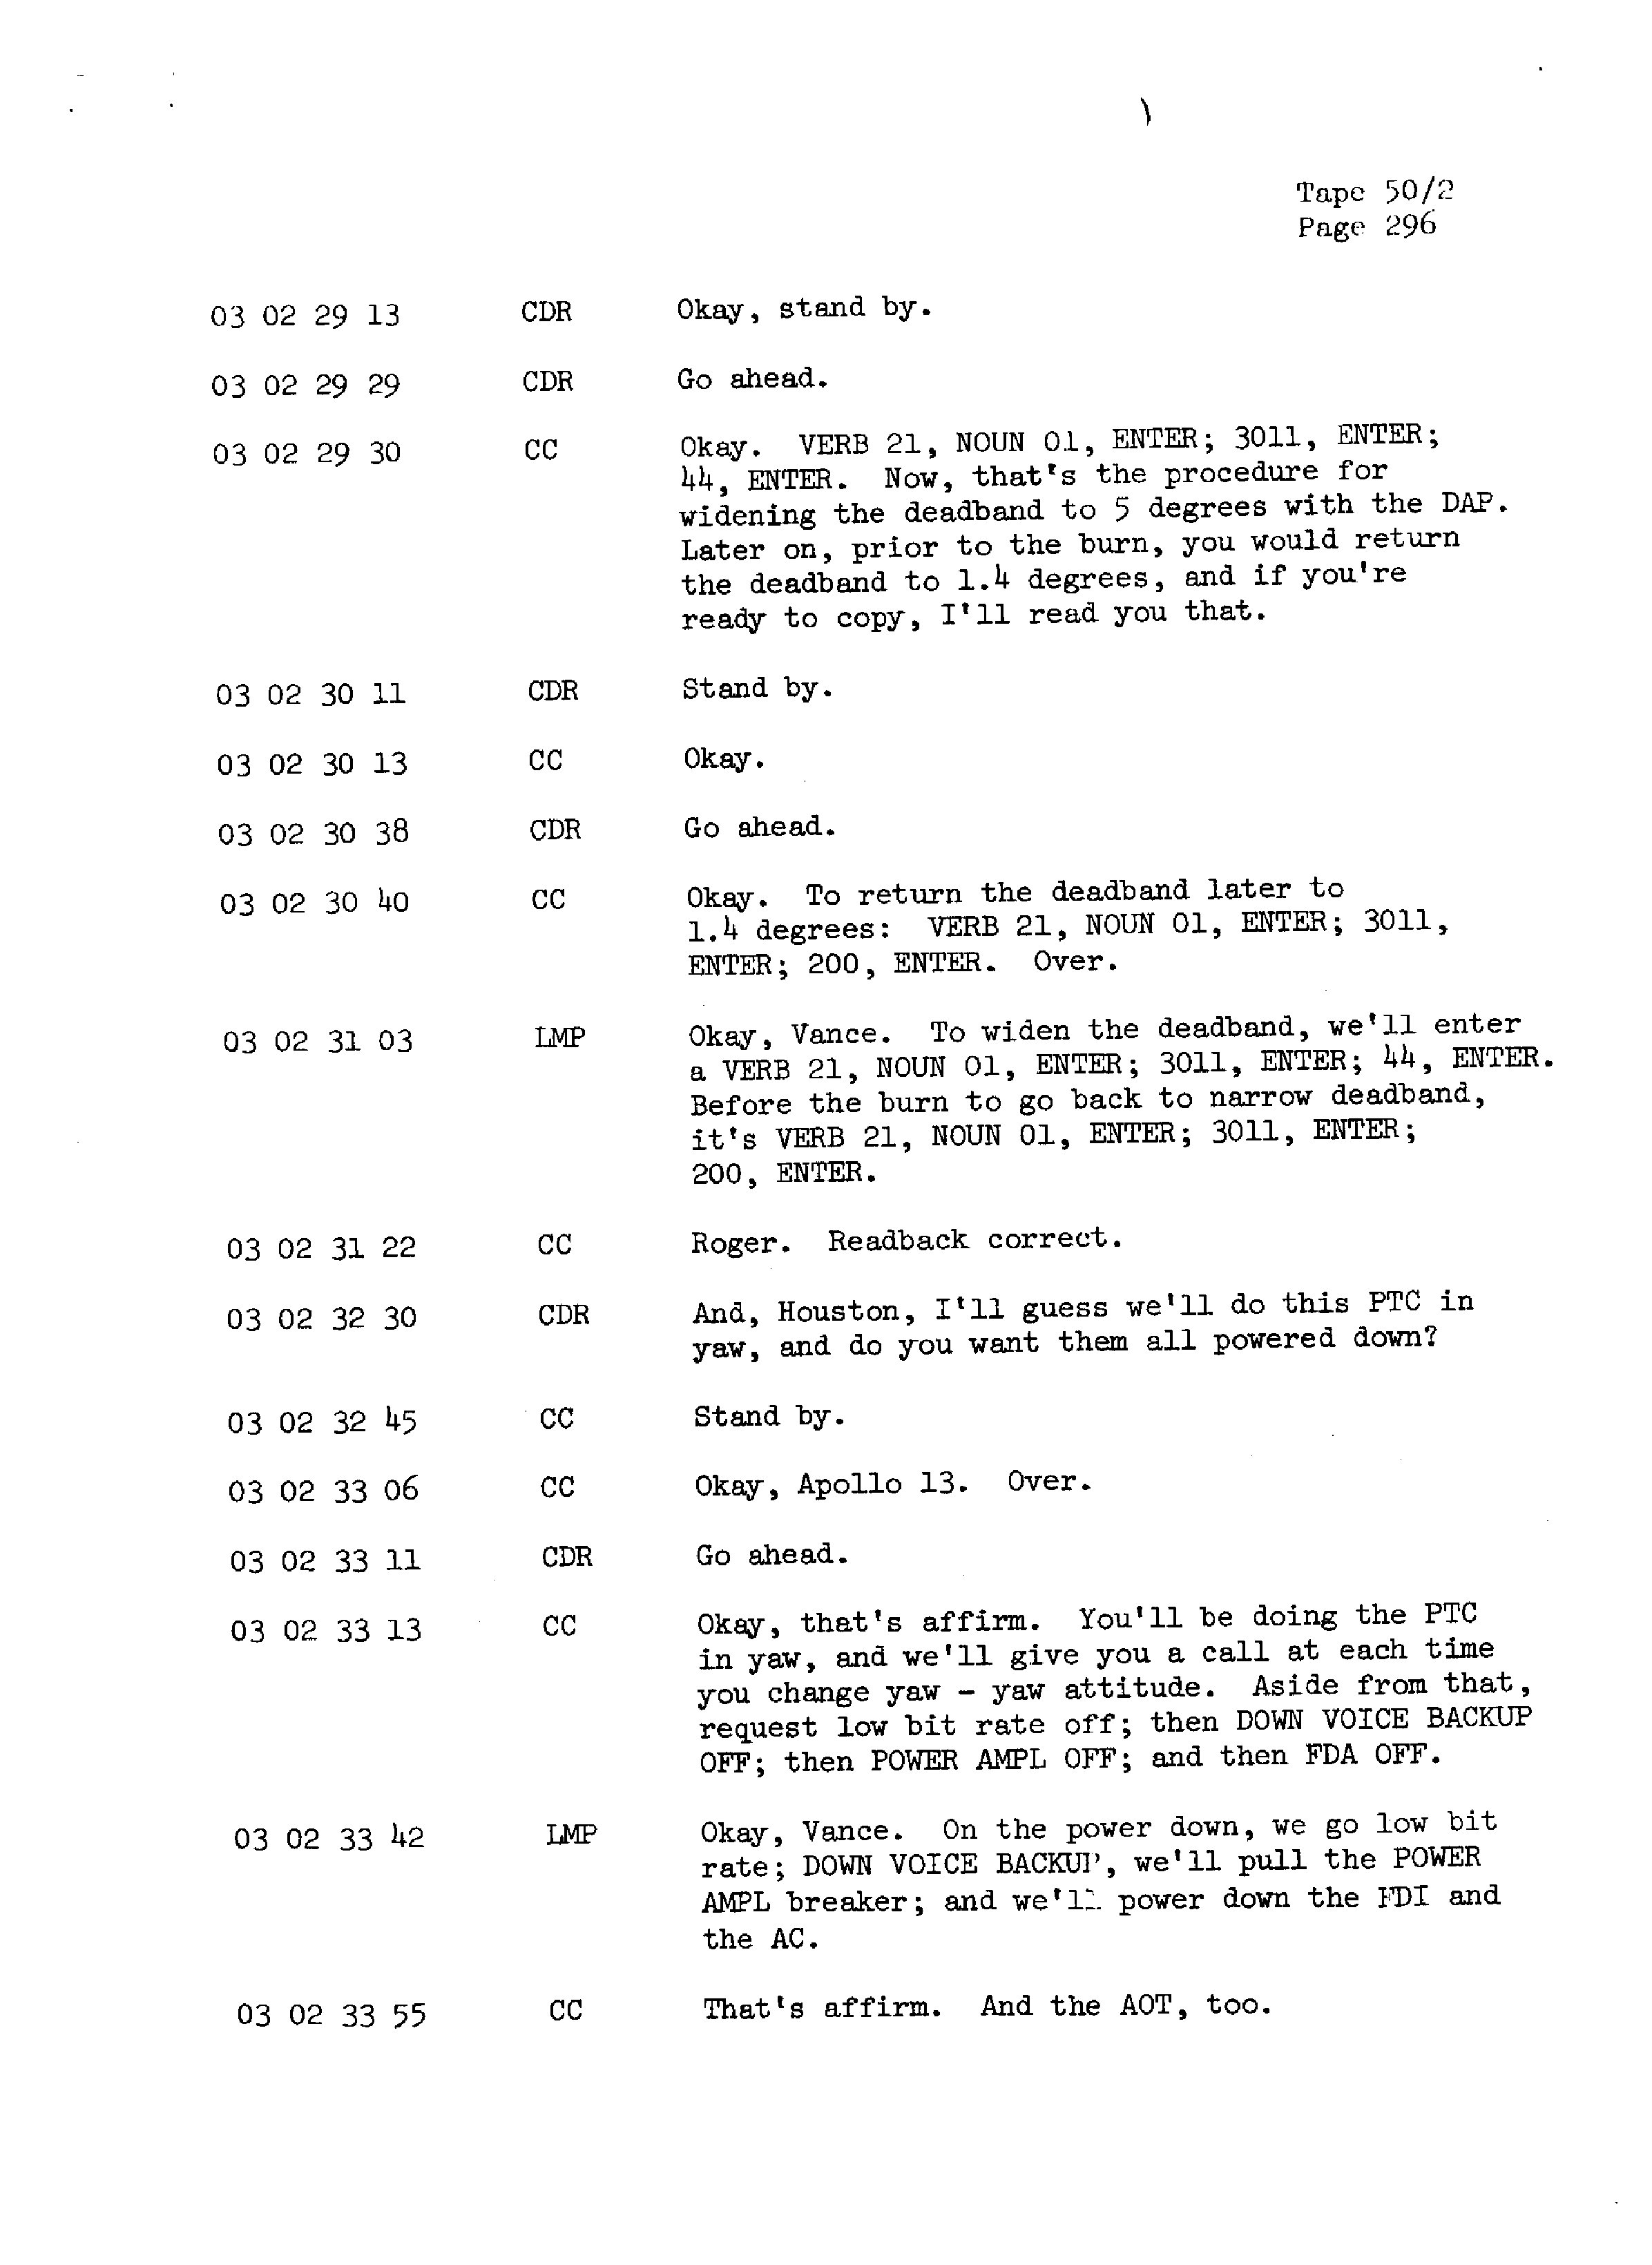 Page 303 of Apollo 13’s original transcript